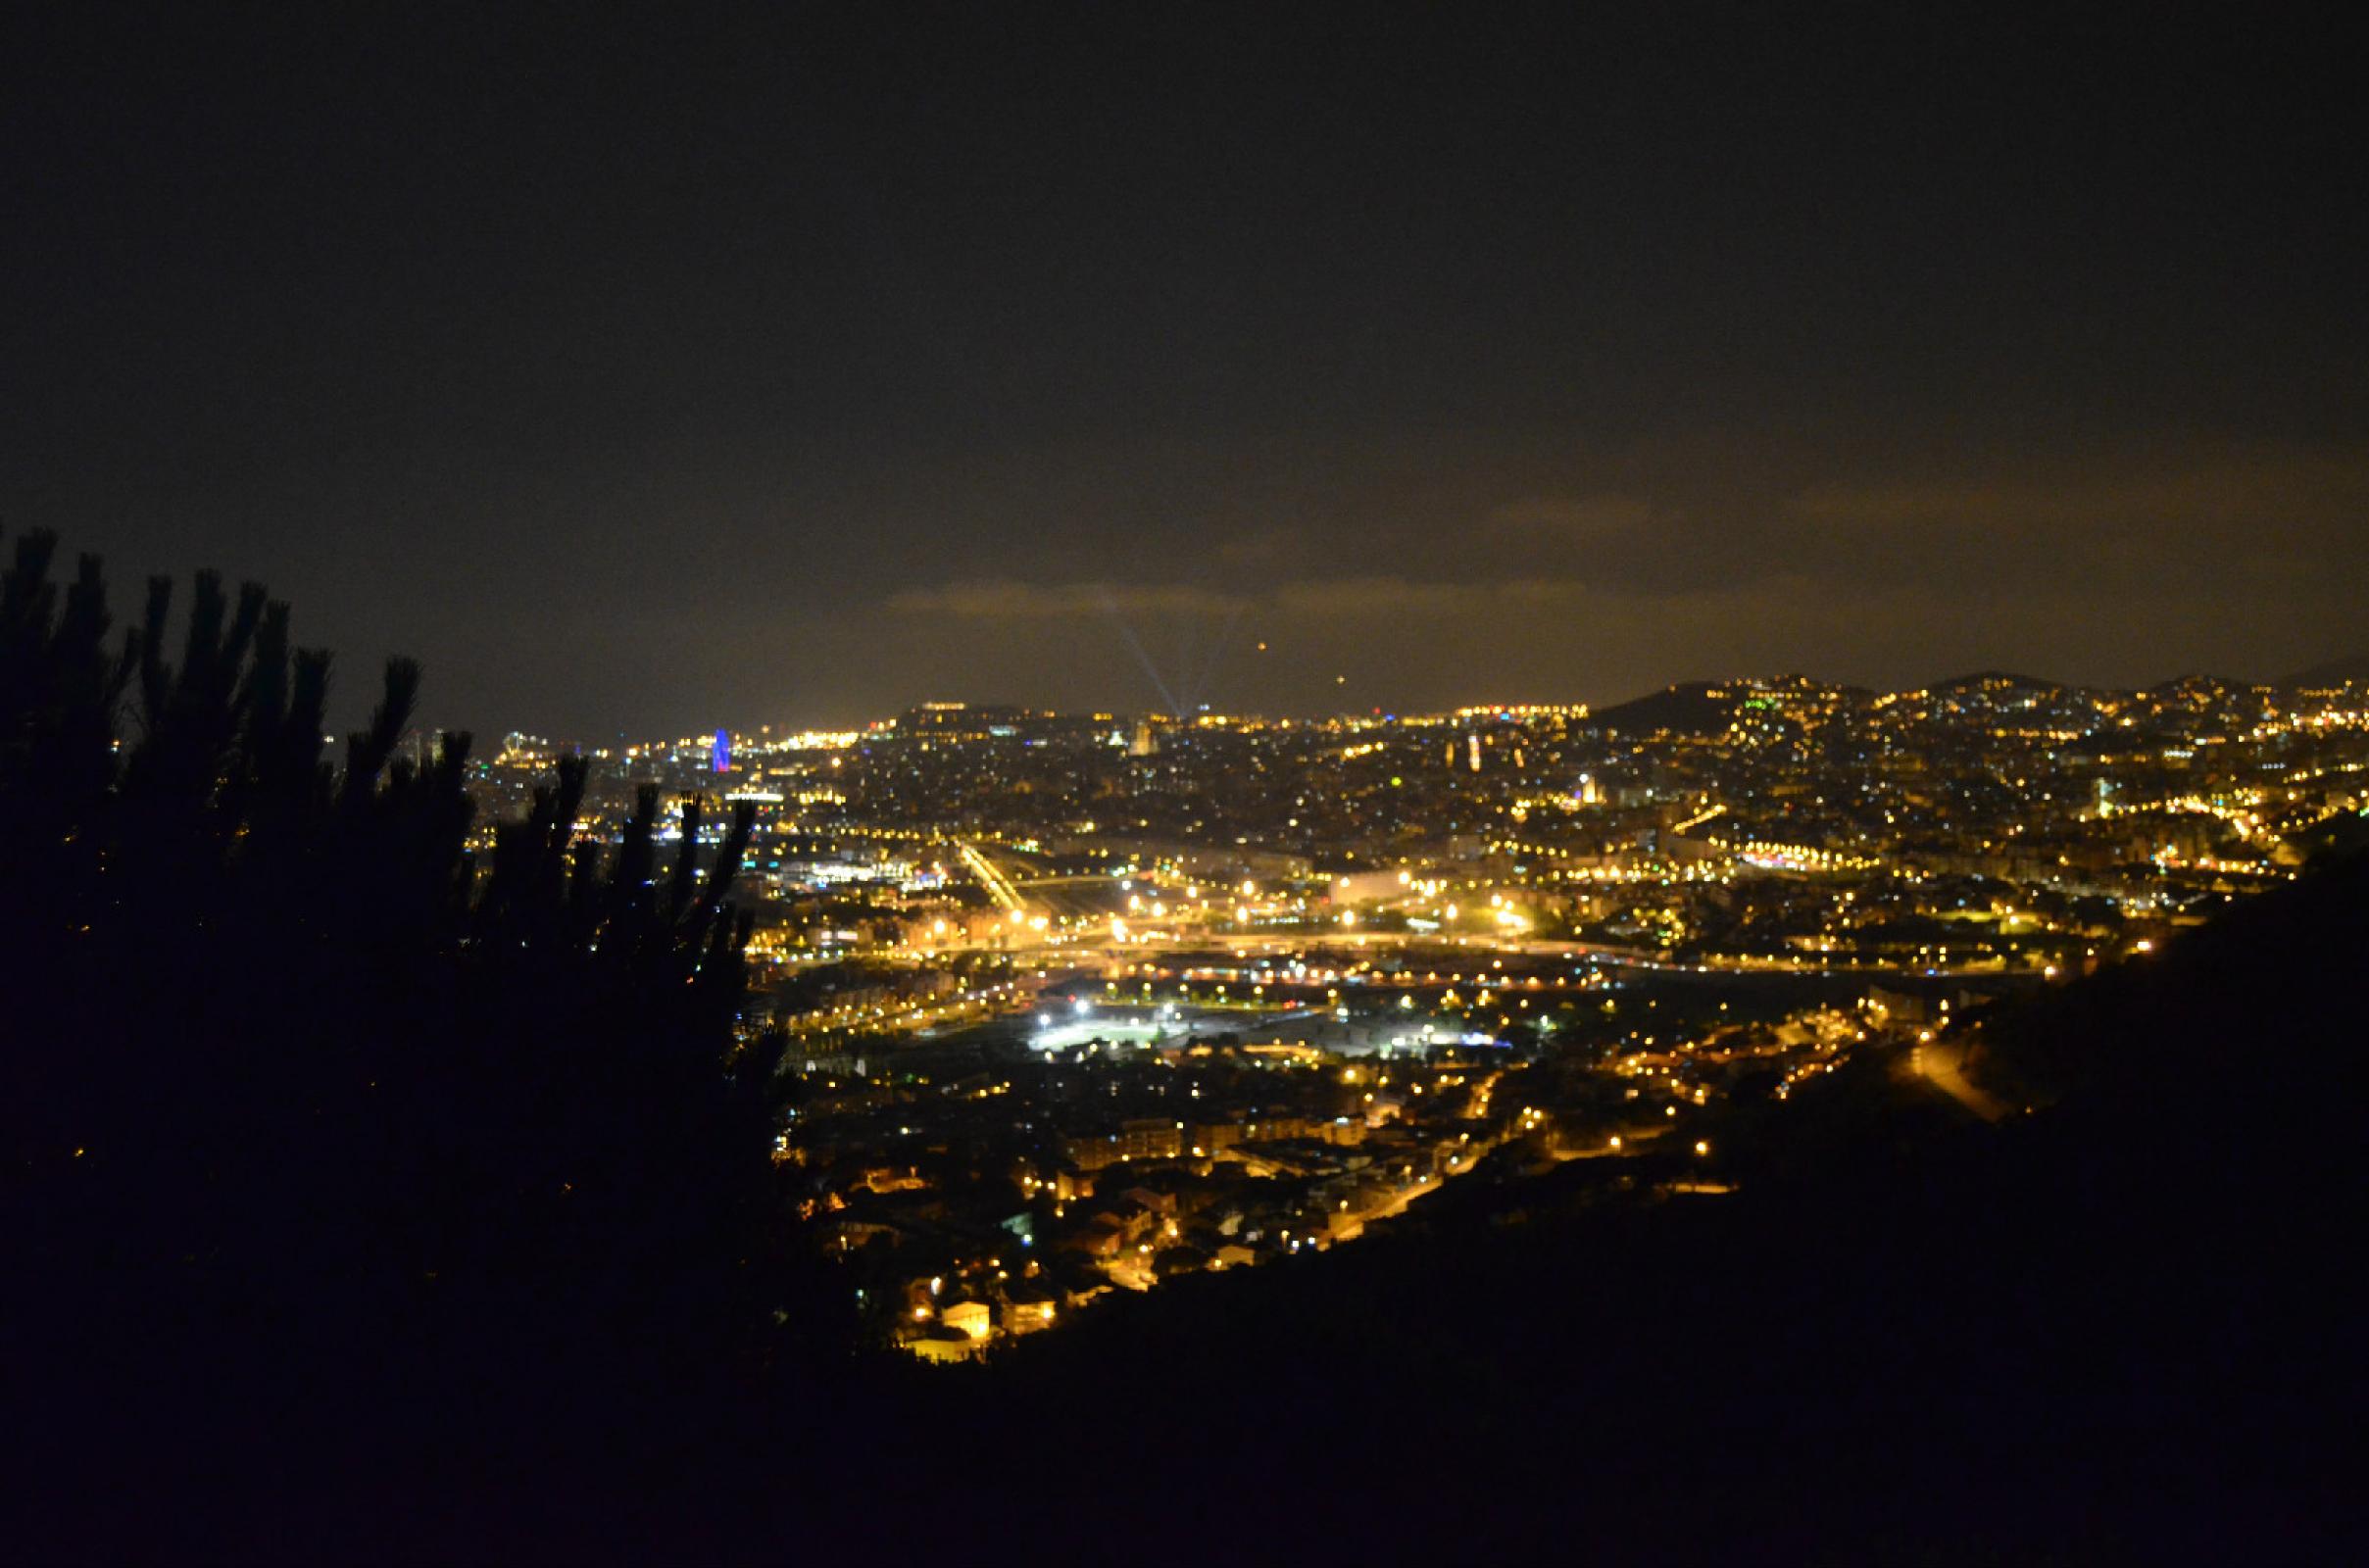 Barcelona de noche, se aprecia la torre Agbar y las luces del palacio de Montjuic